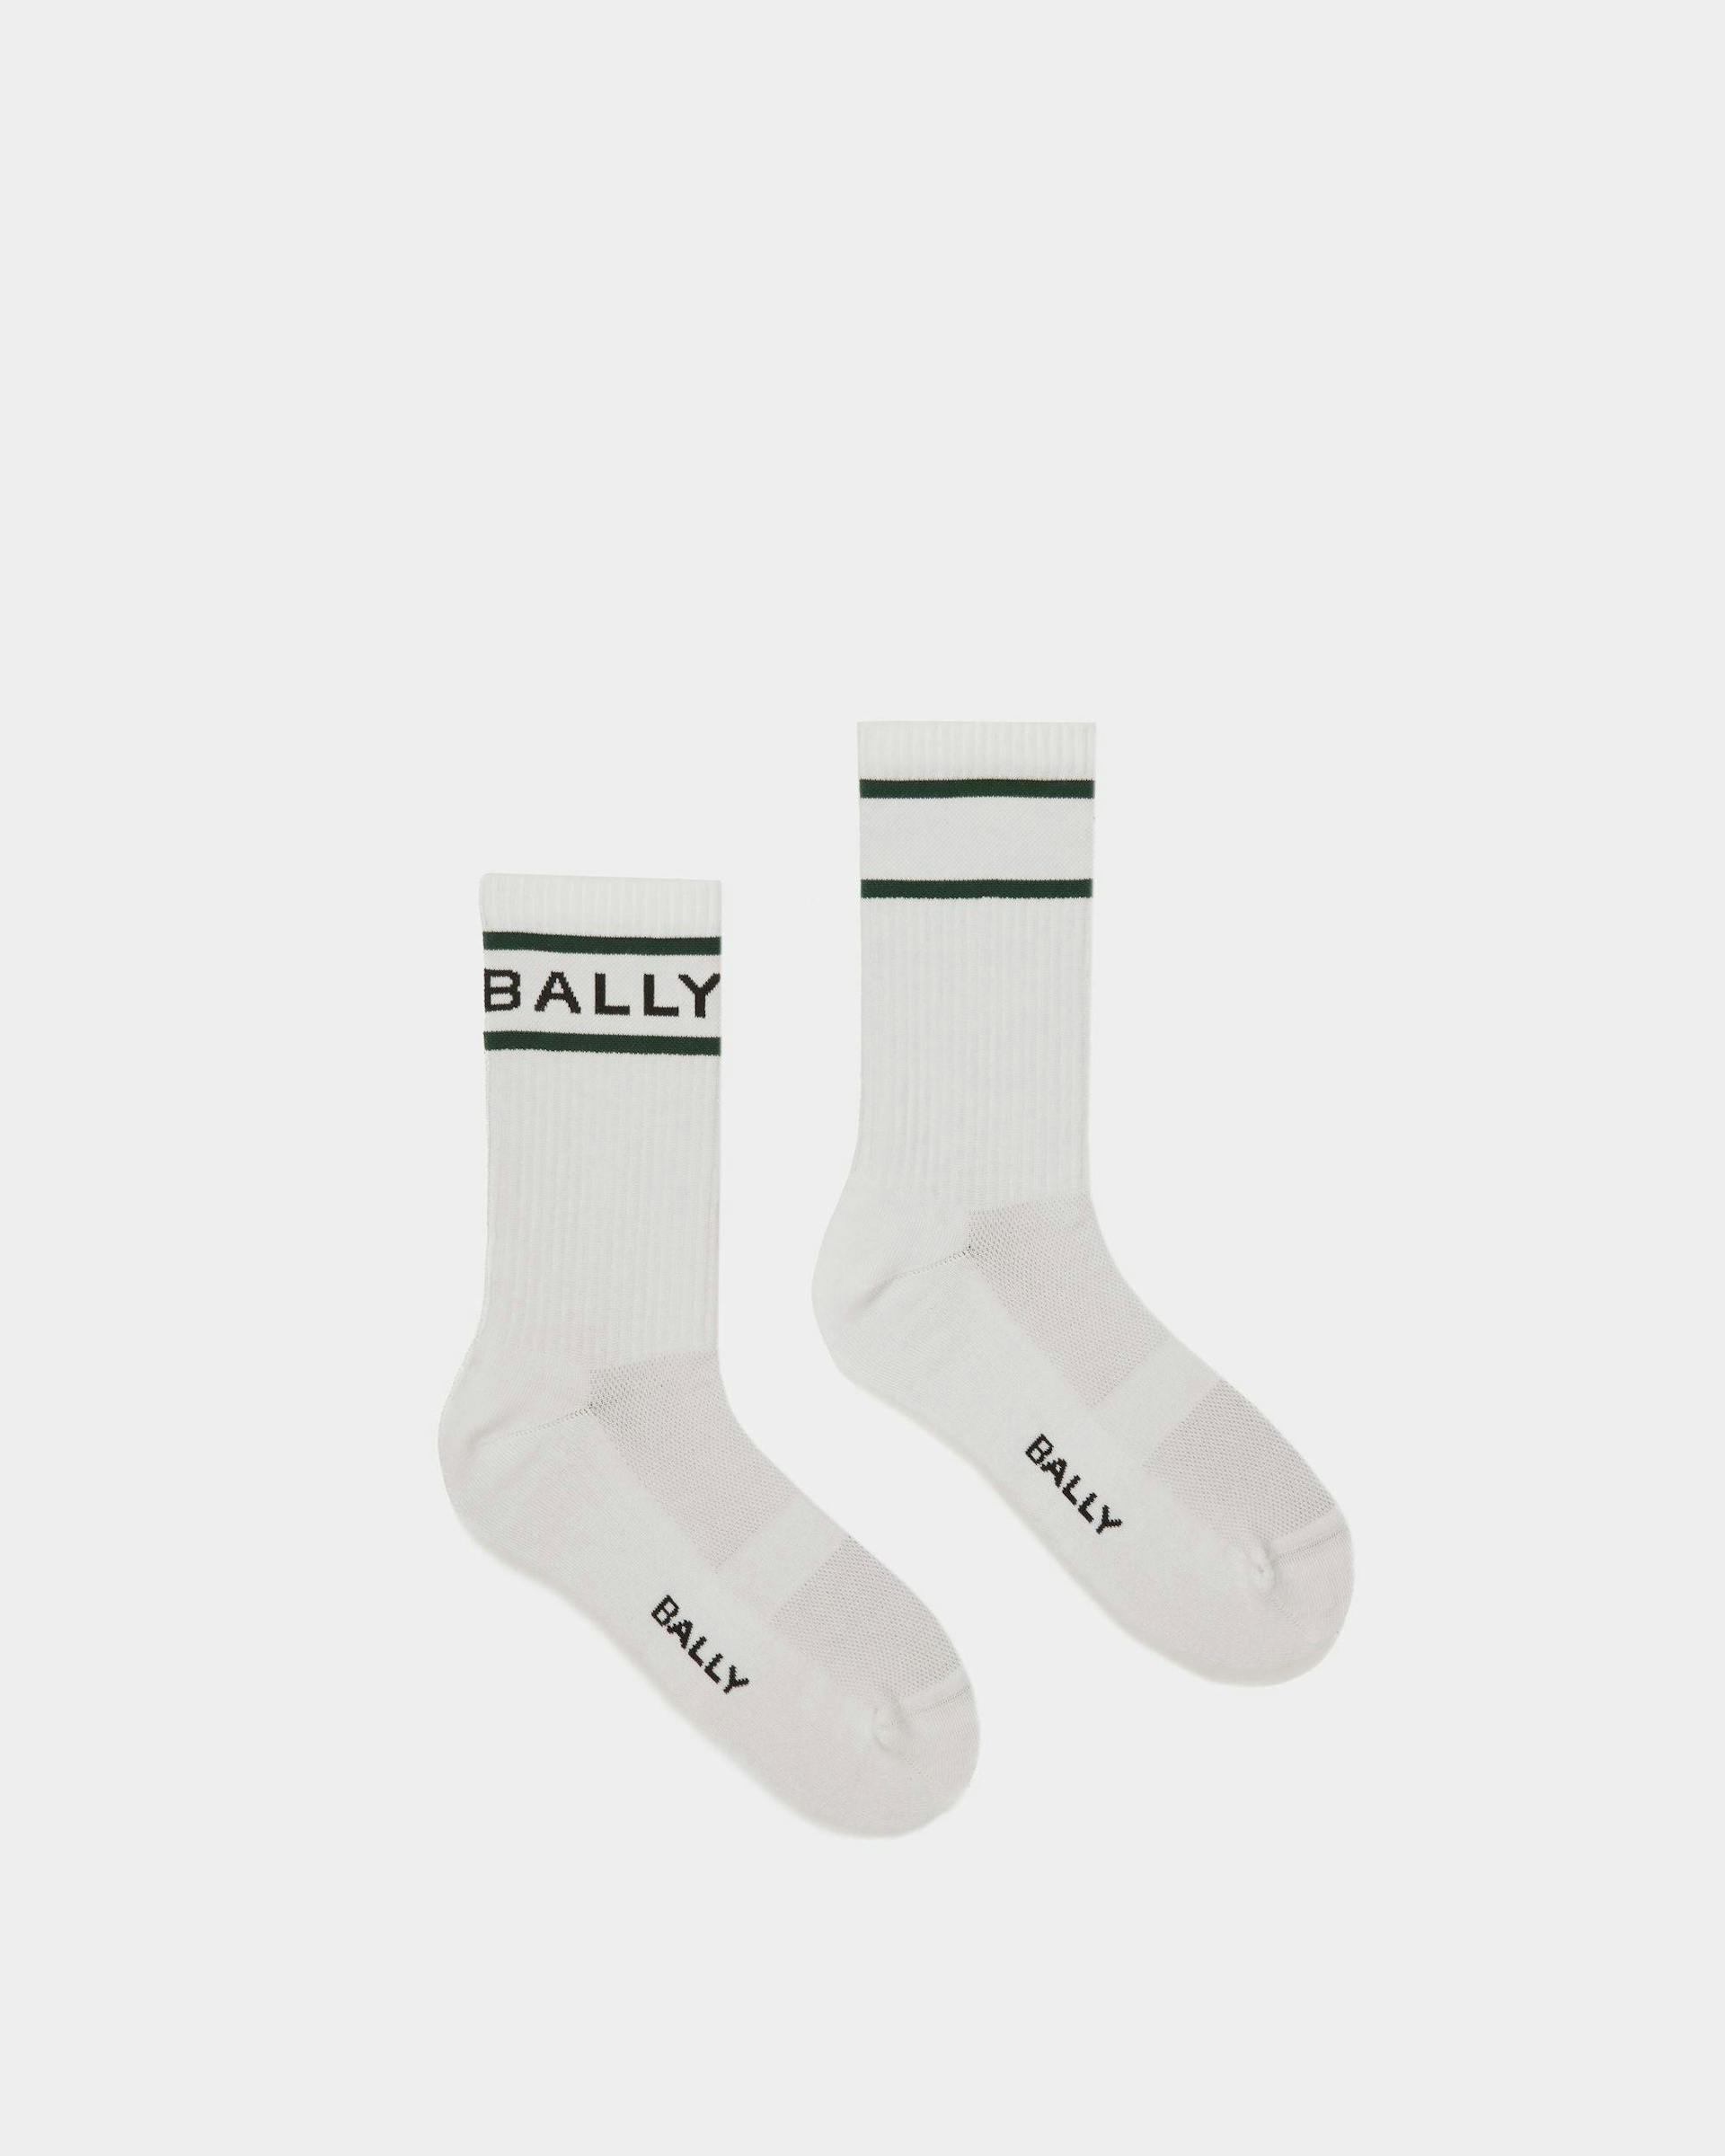 Chaussettes à rayures Bally En blanc et vert - Homme - Bally - 01